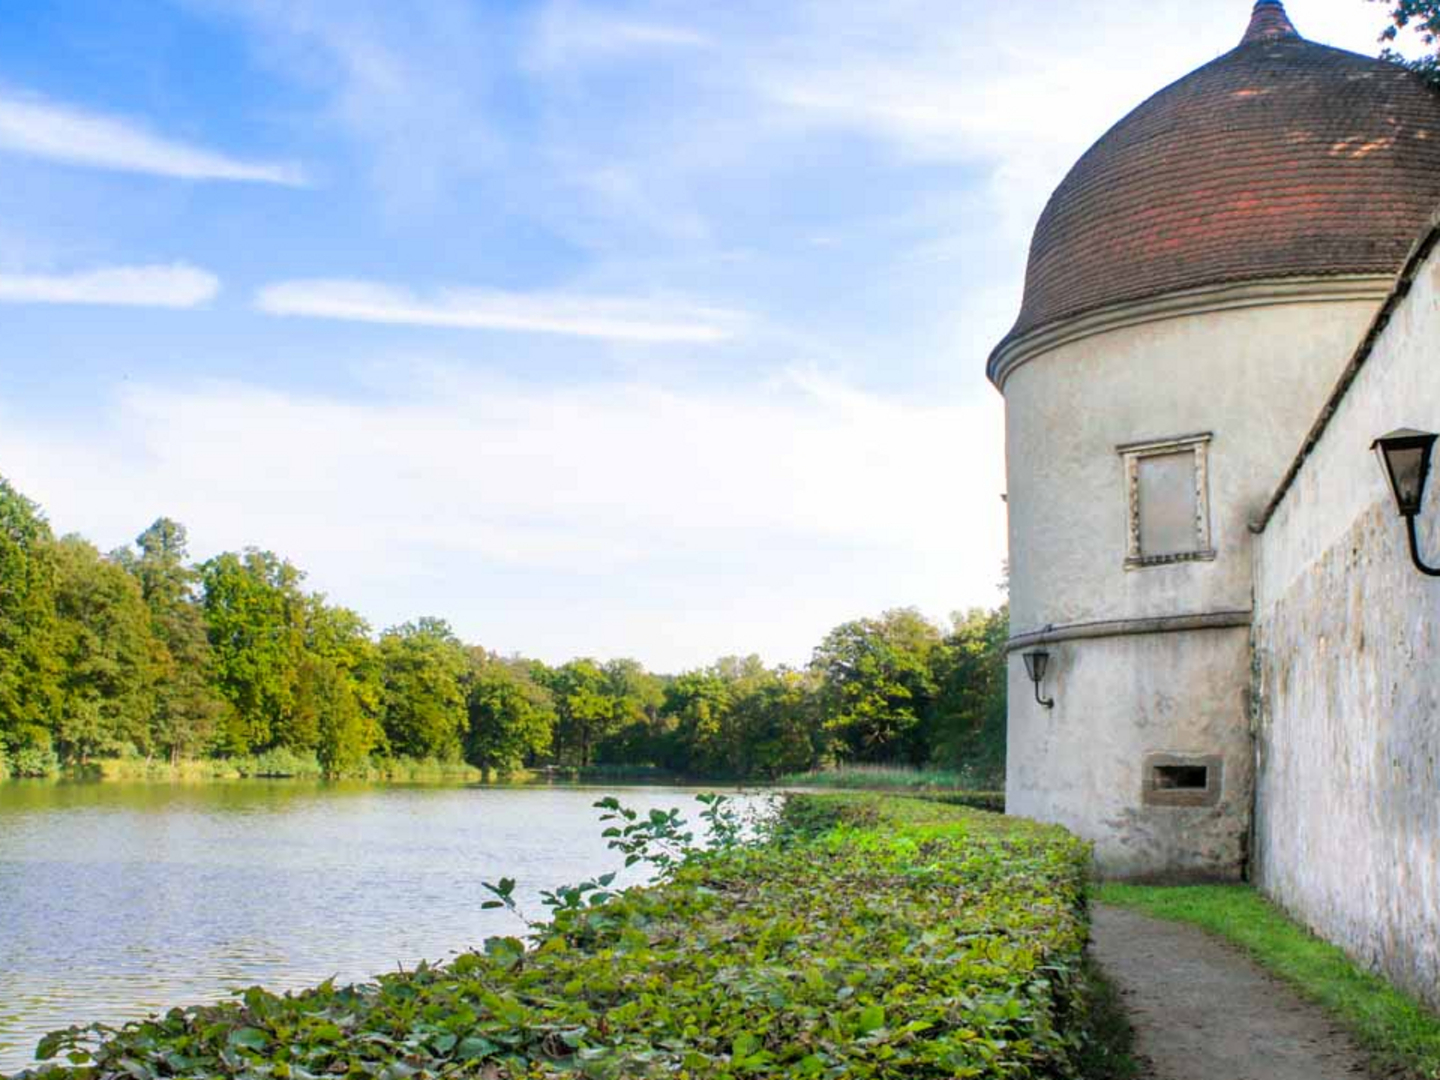 Ein Spaziergang lohnt sich im Schlosspark Hermsdorf entlang der Schlossmauer mit Türmchen und See.